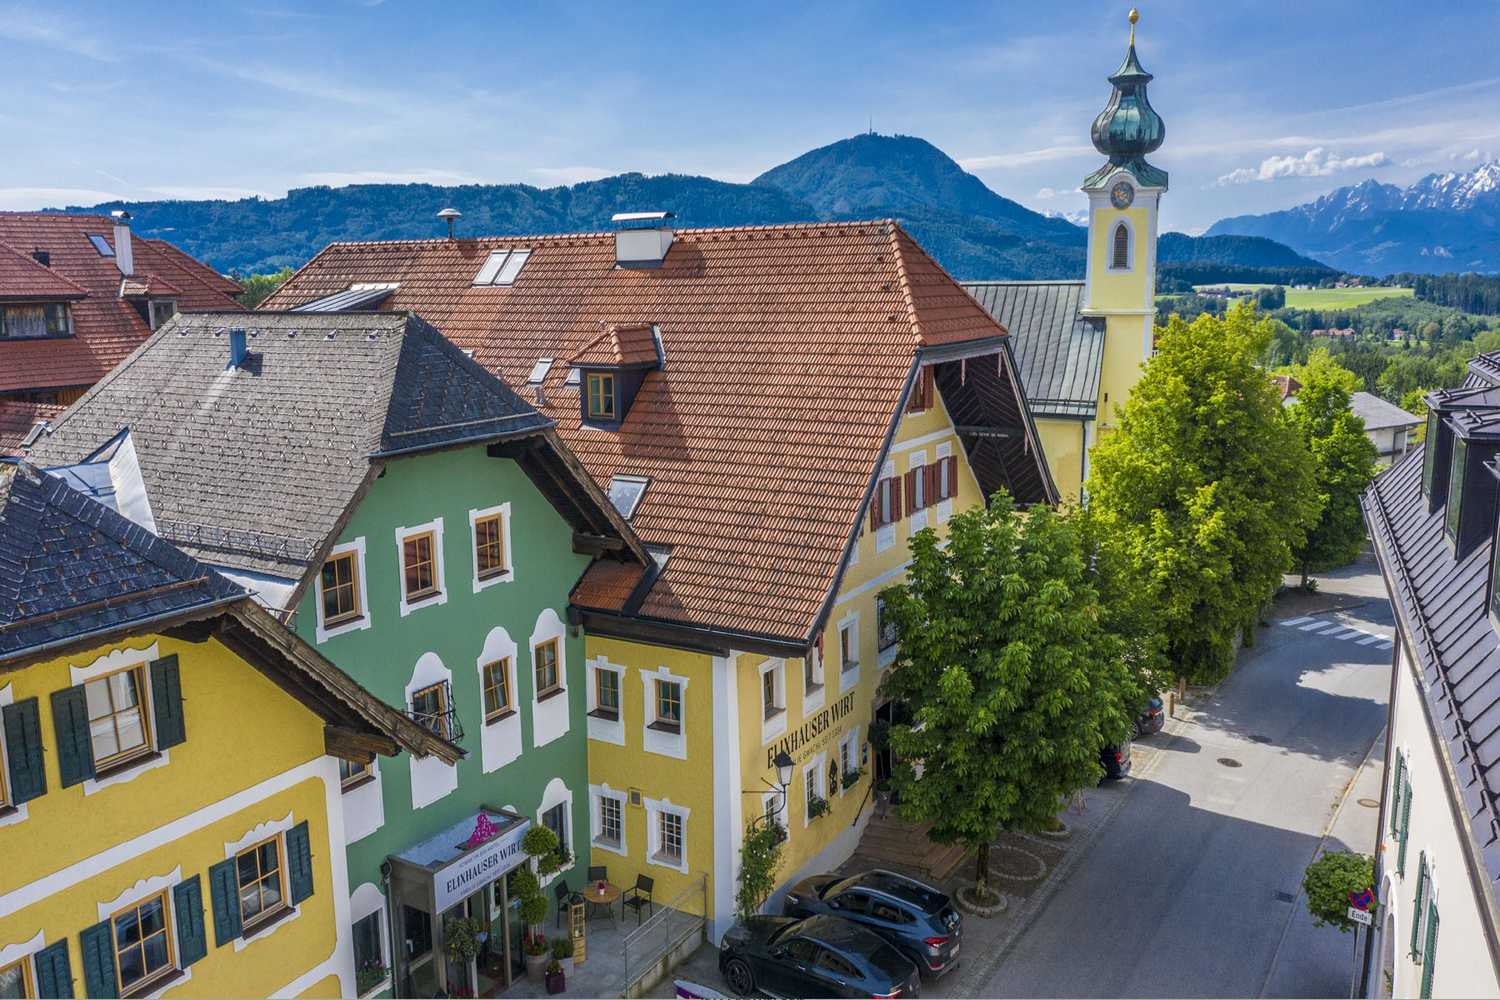 Romantik Spa Hotel Elixhauser Wirt, Salzburg - Austria